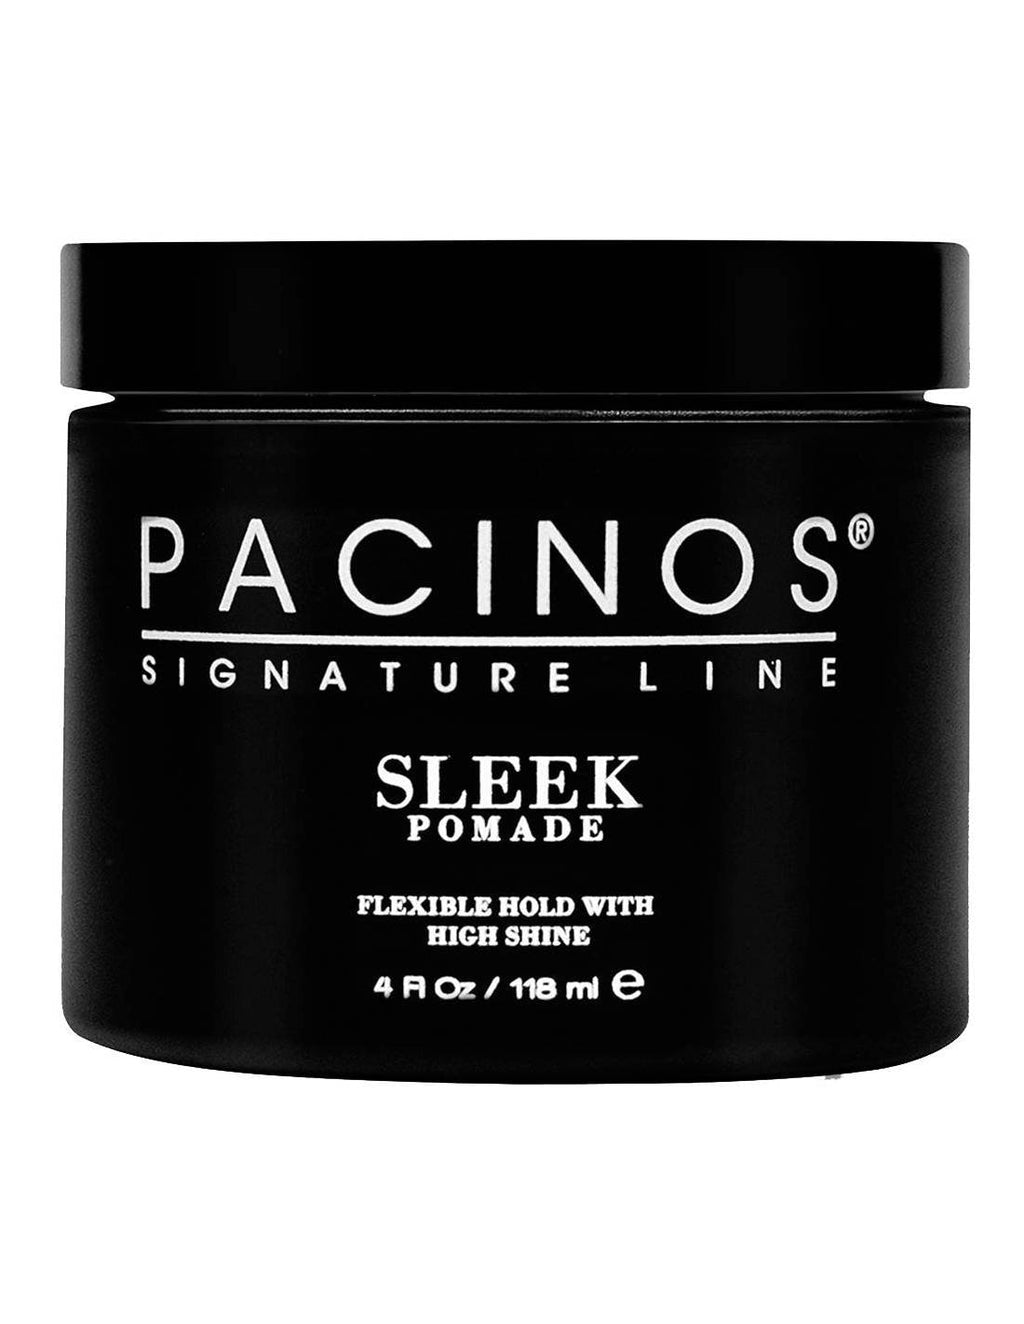 Pacinos Signature Line Sleek pomade 118ml